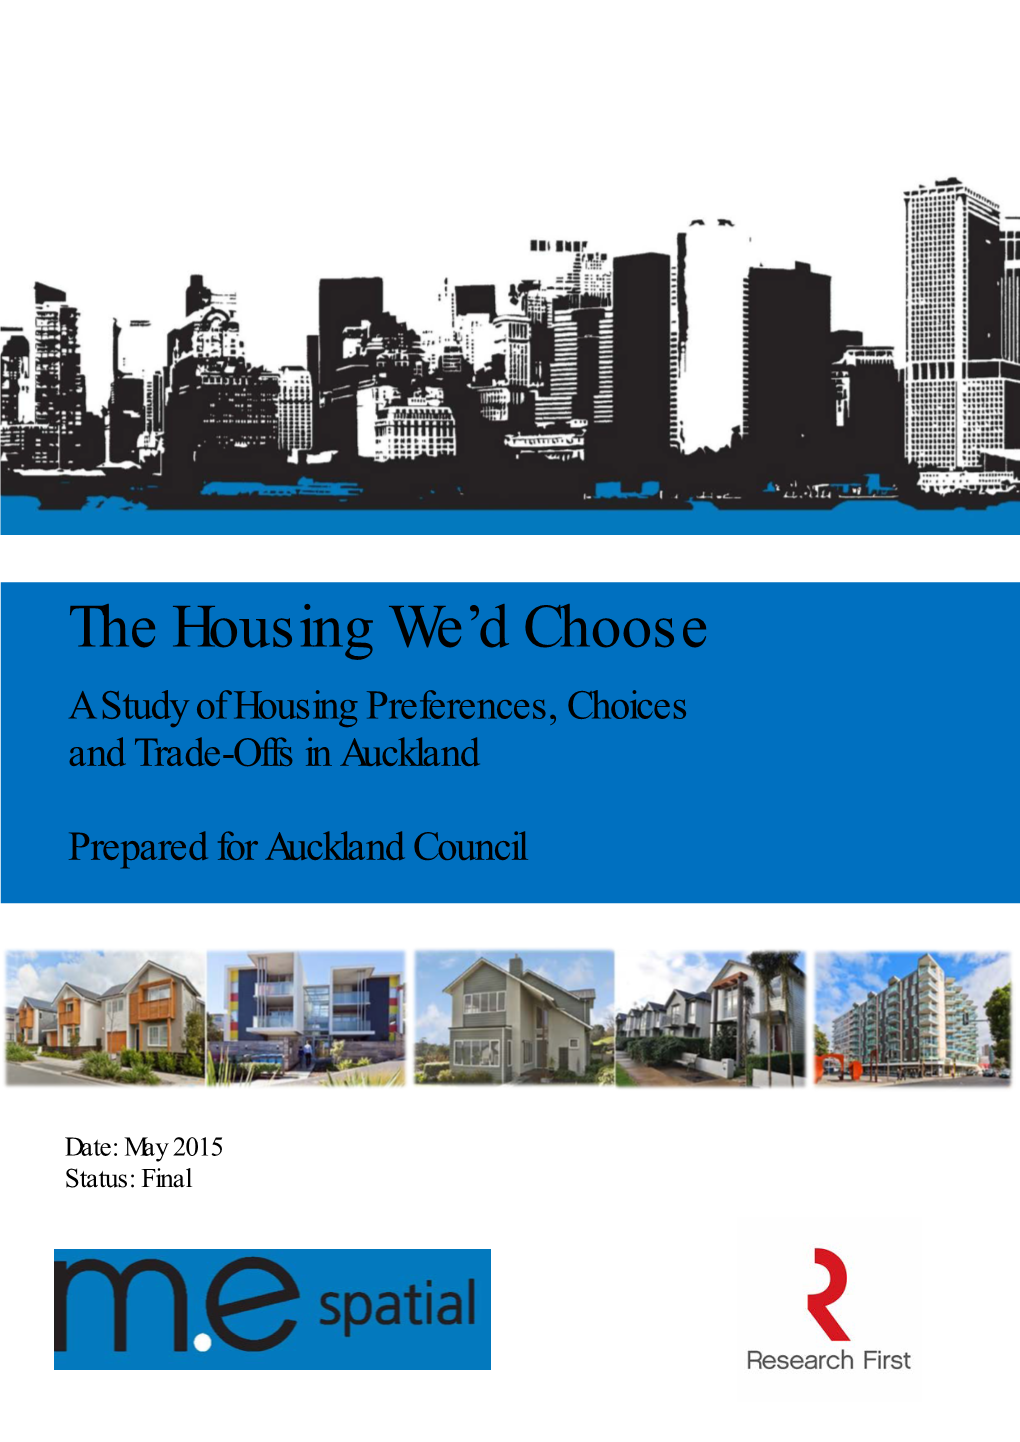 The Housing We'd Choose" Survey